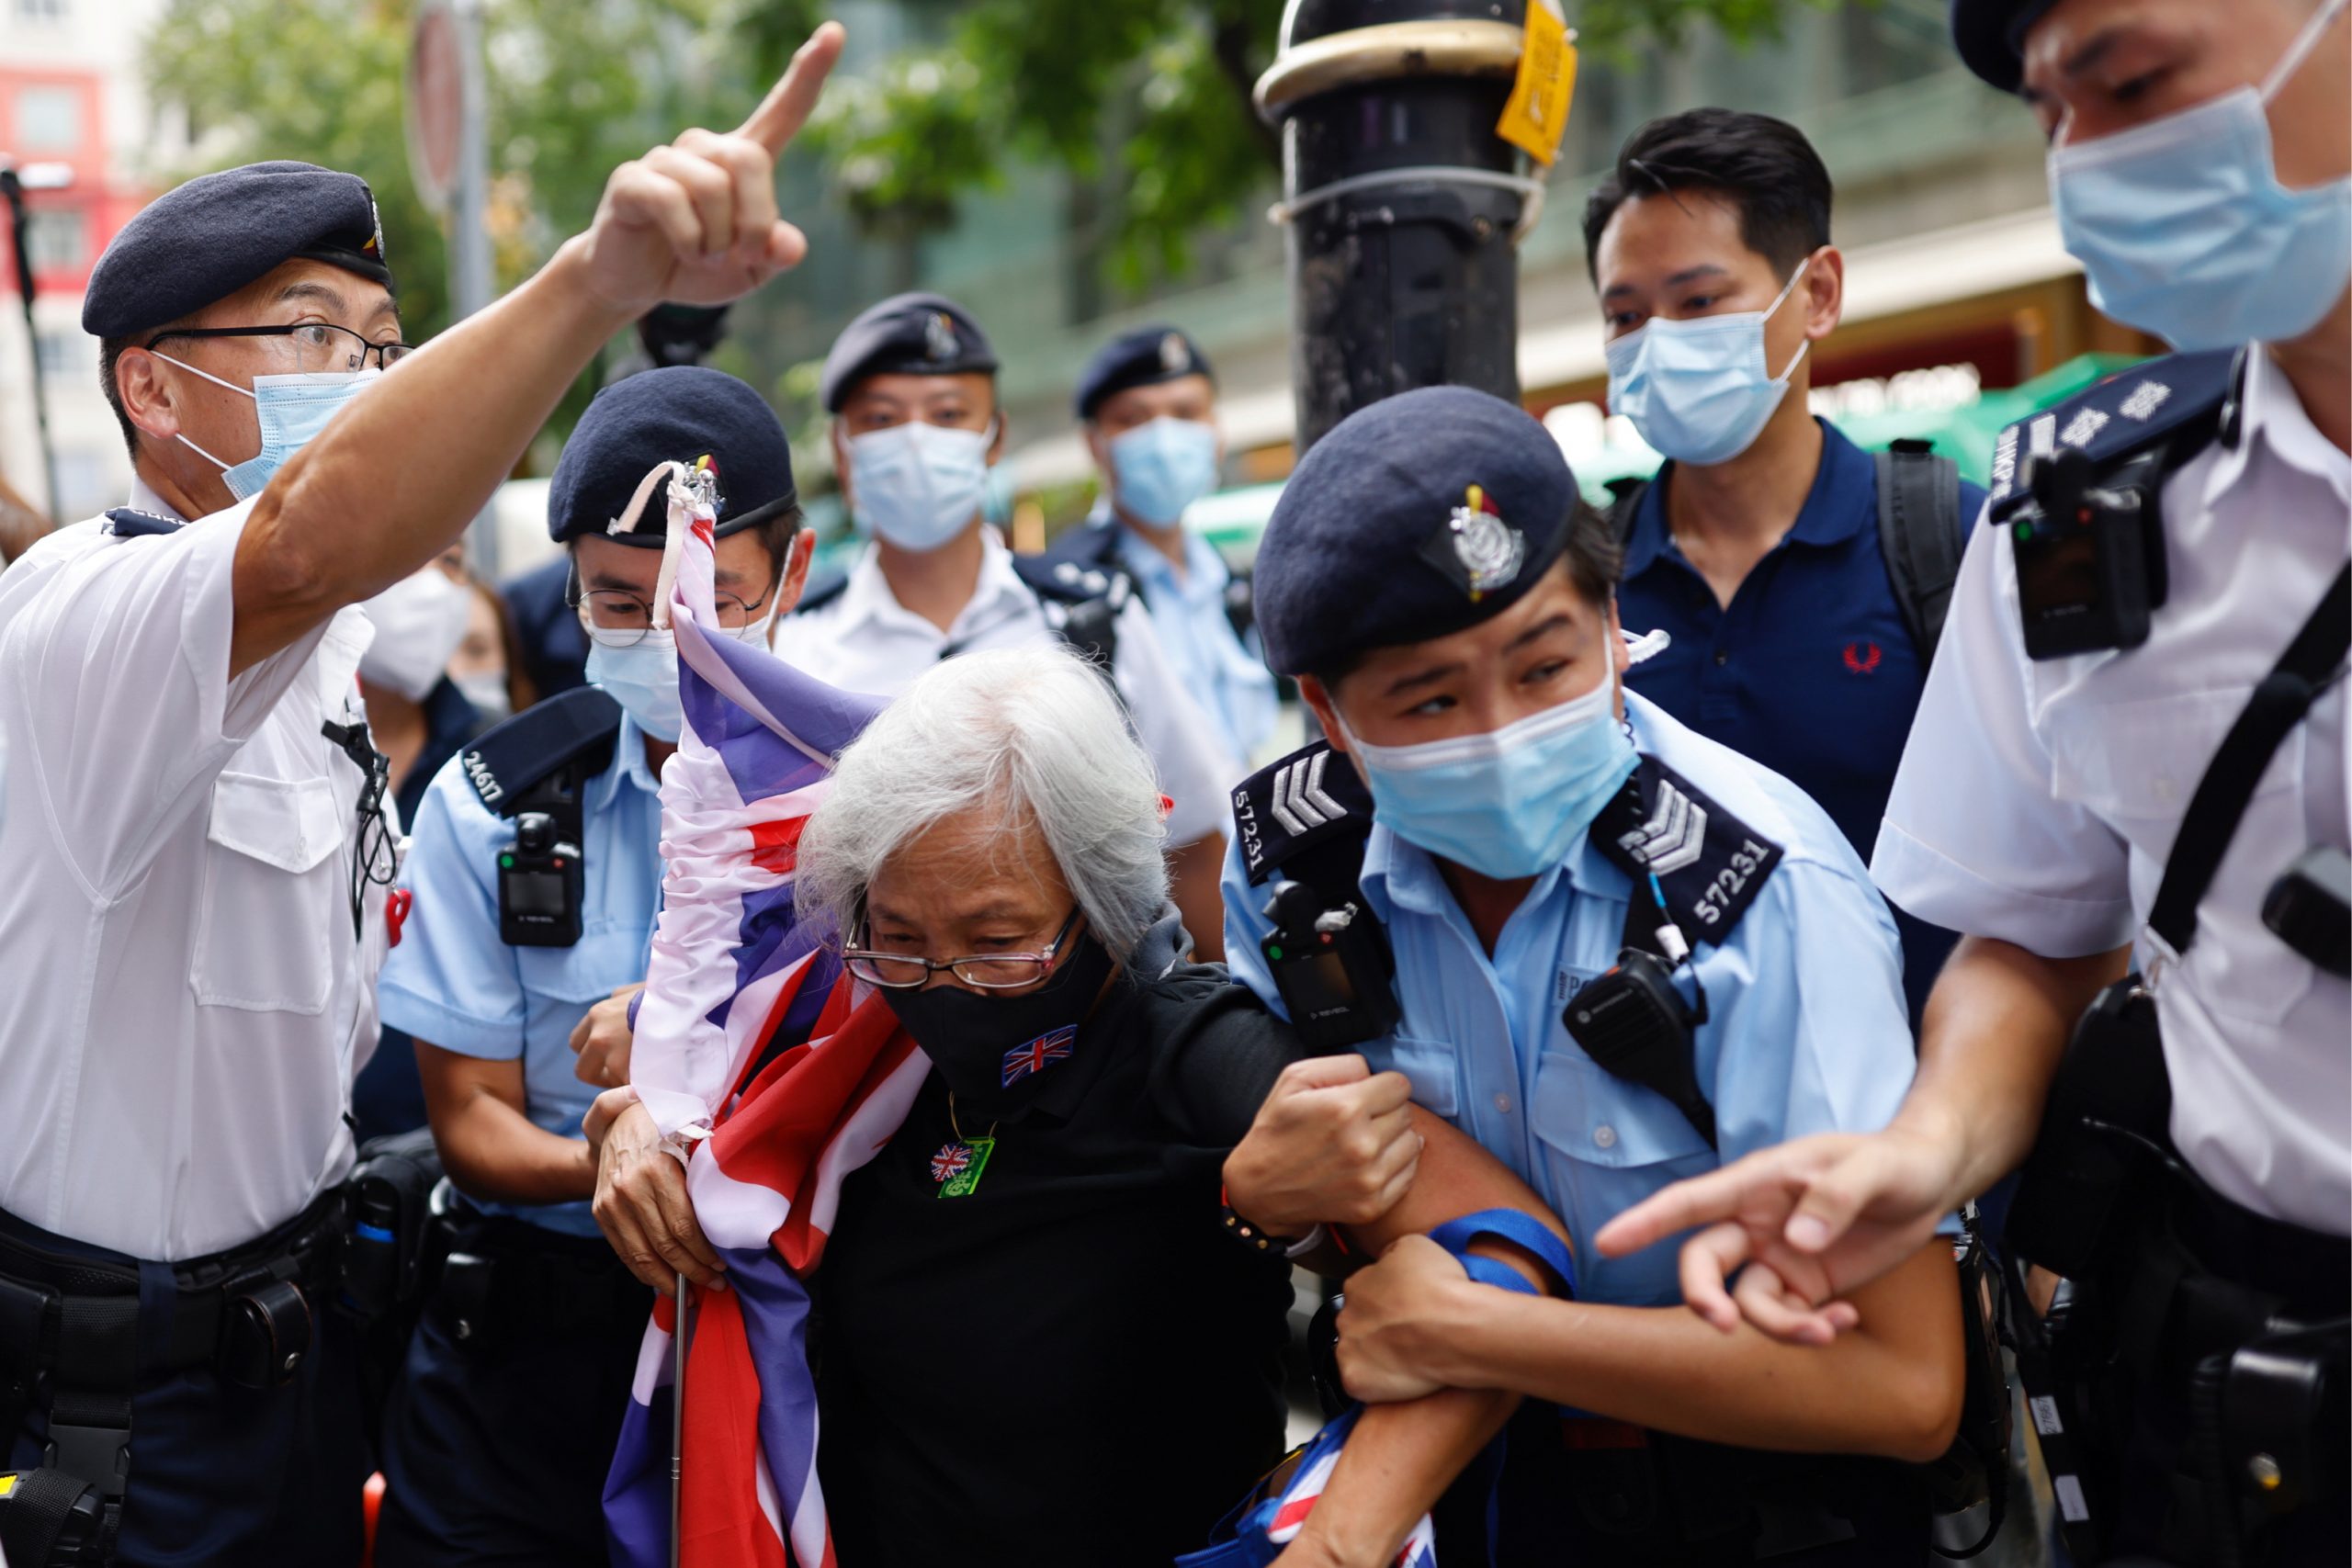 Een actievoerder in Hong Kong wordt gearresteerd op 1 juli tijdens de viering van de overdracht van de voormalige Britse kolonie aan China. Foto: REUTERS/Tyrone Siu